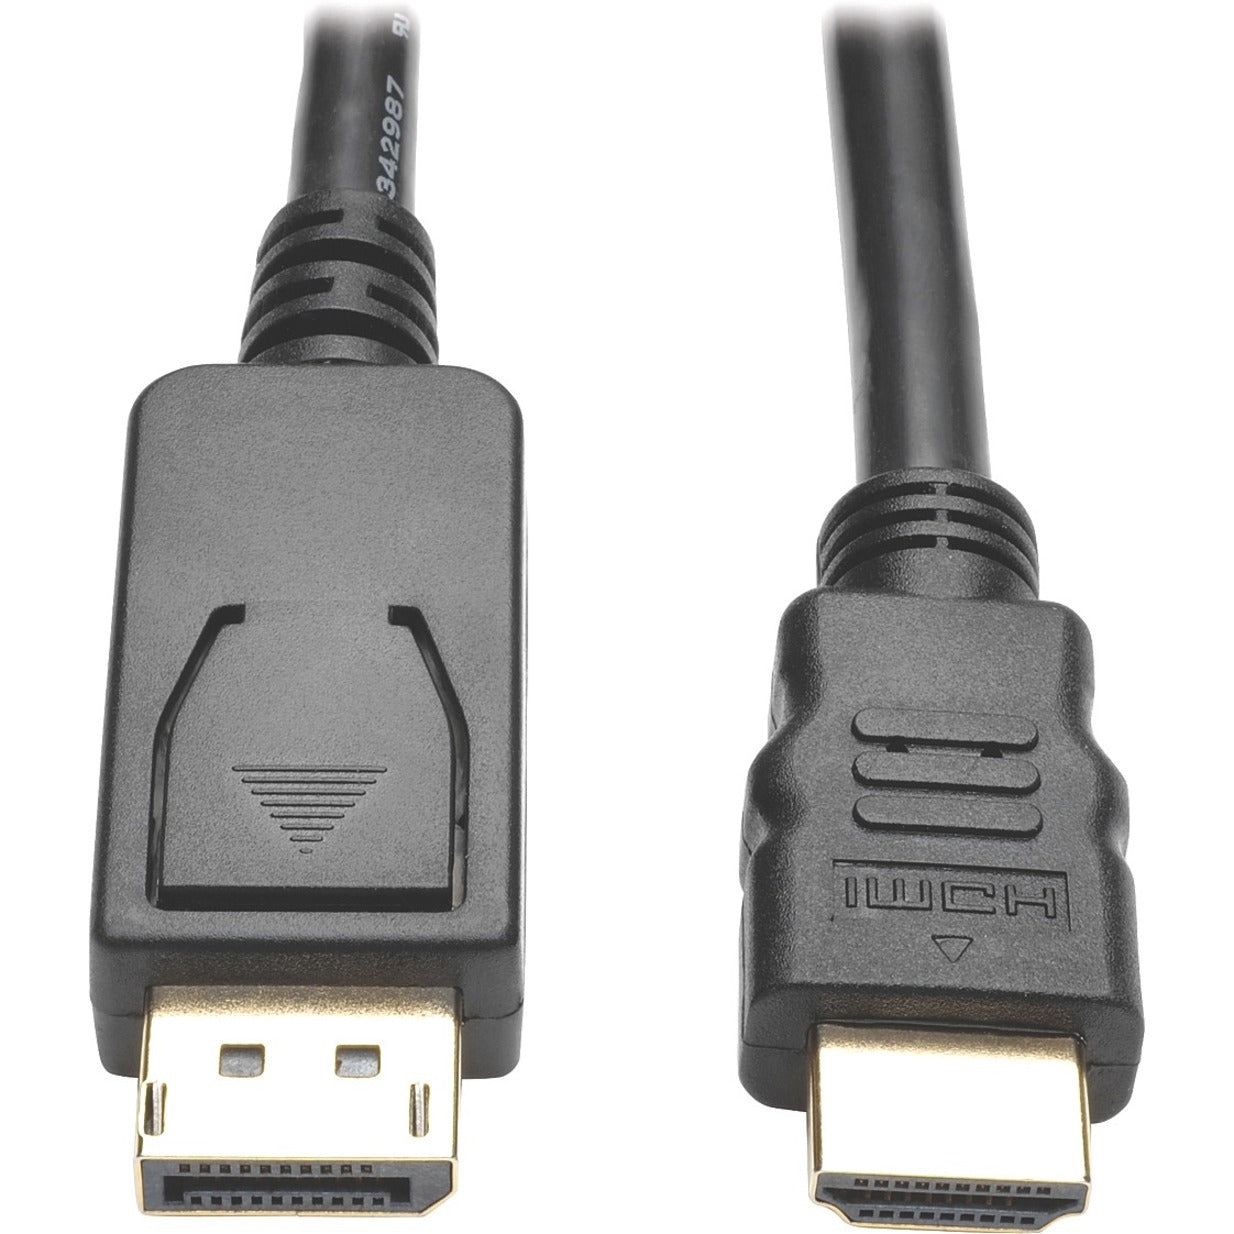 Tripp Lite P582-006-V2-ACT DisplayPort/HDMI Kabel 6 ft Aktiv Vergoldet